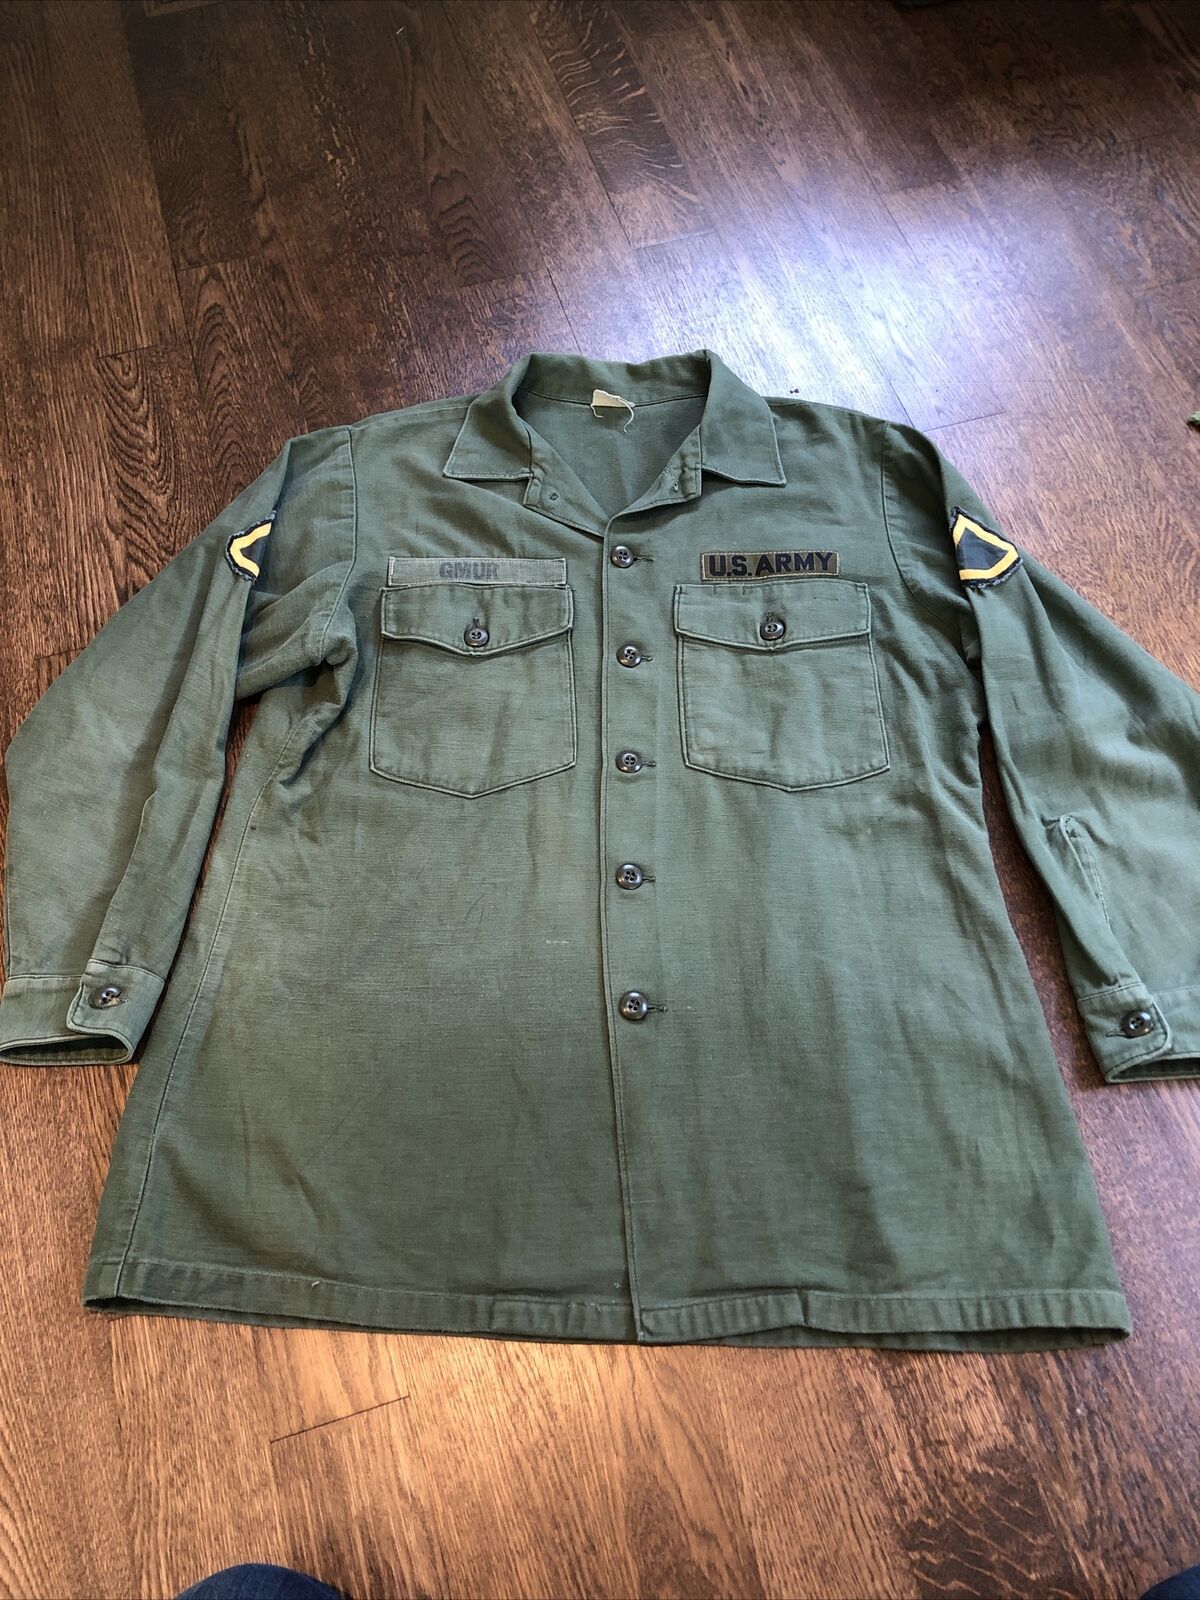 Vintage Vietnam OG107 Shirt 16-1/2 x 32 Patched Named OG 107 Medium